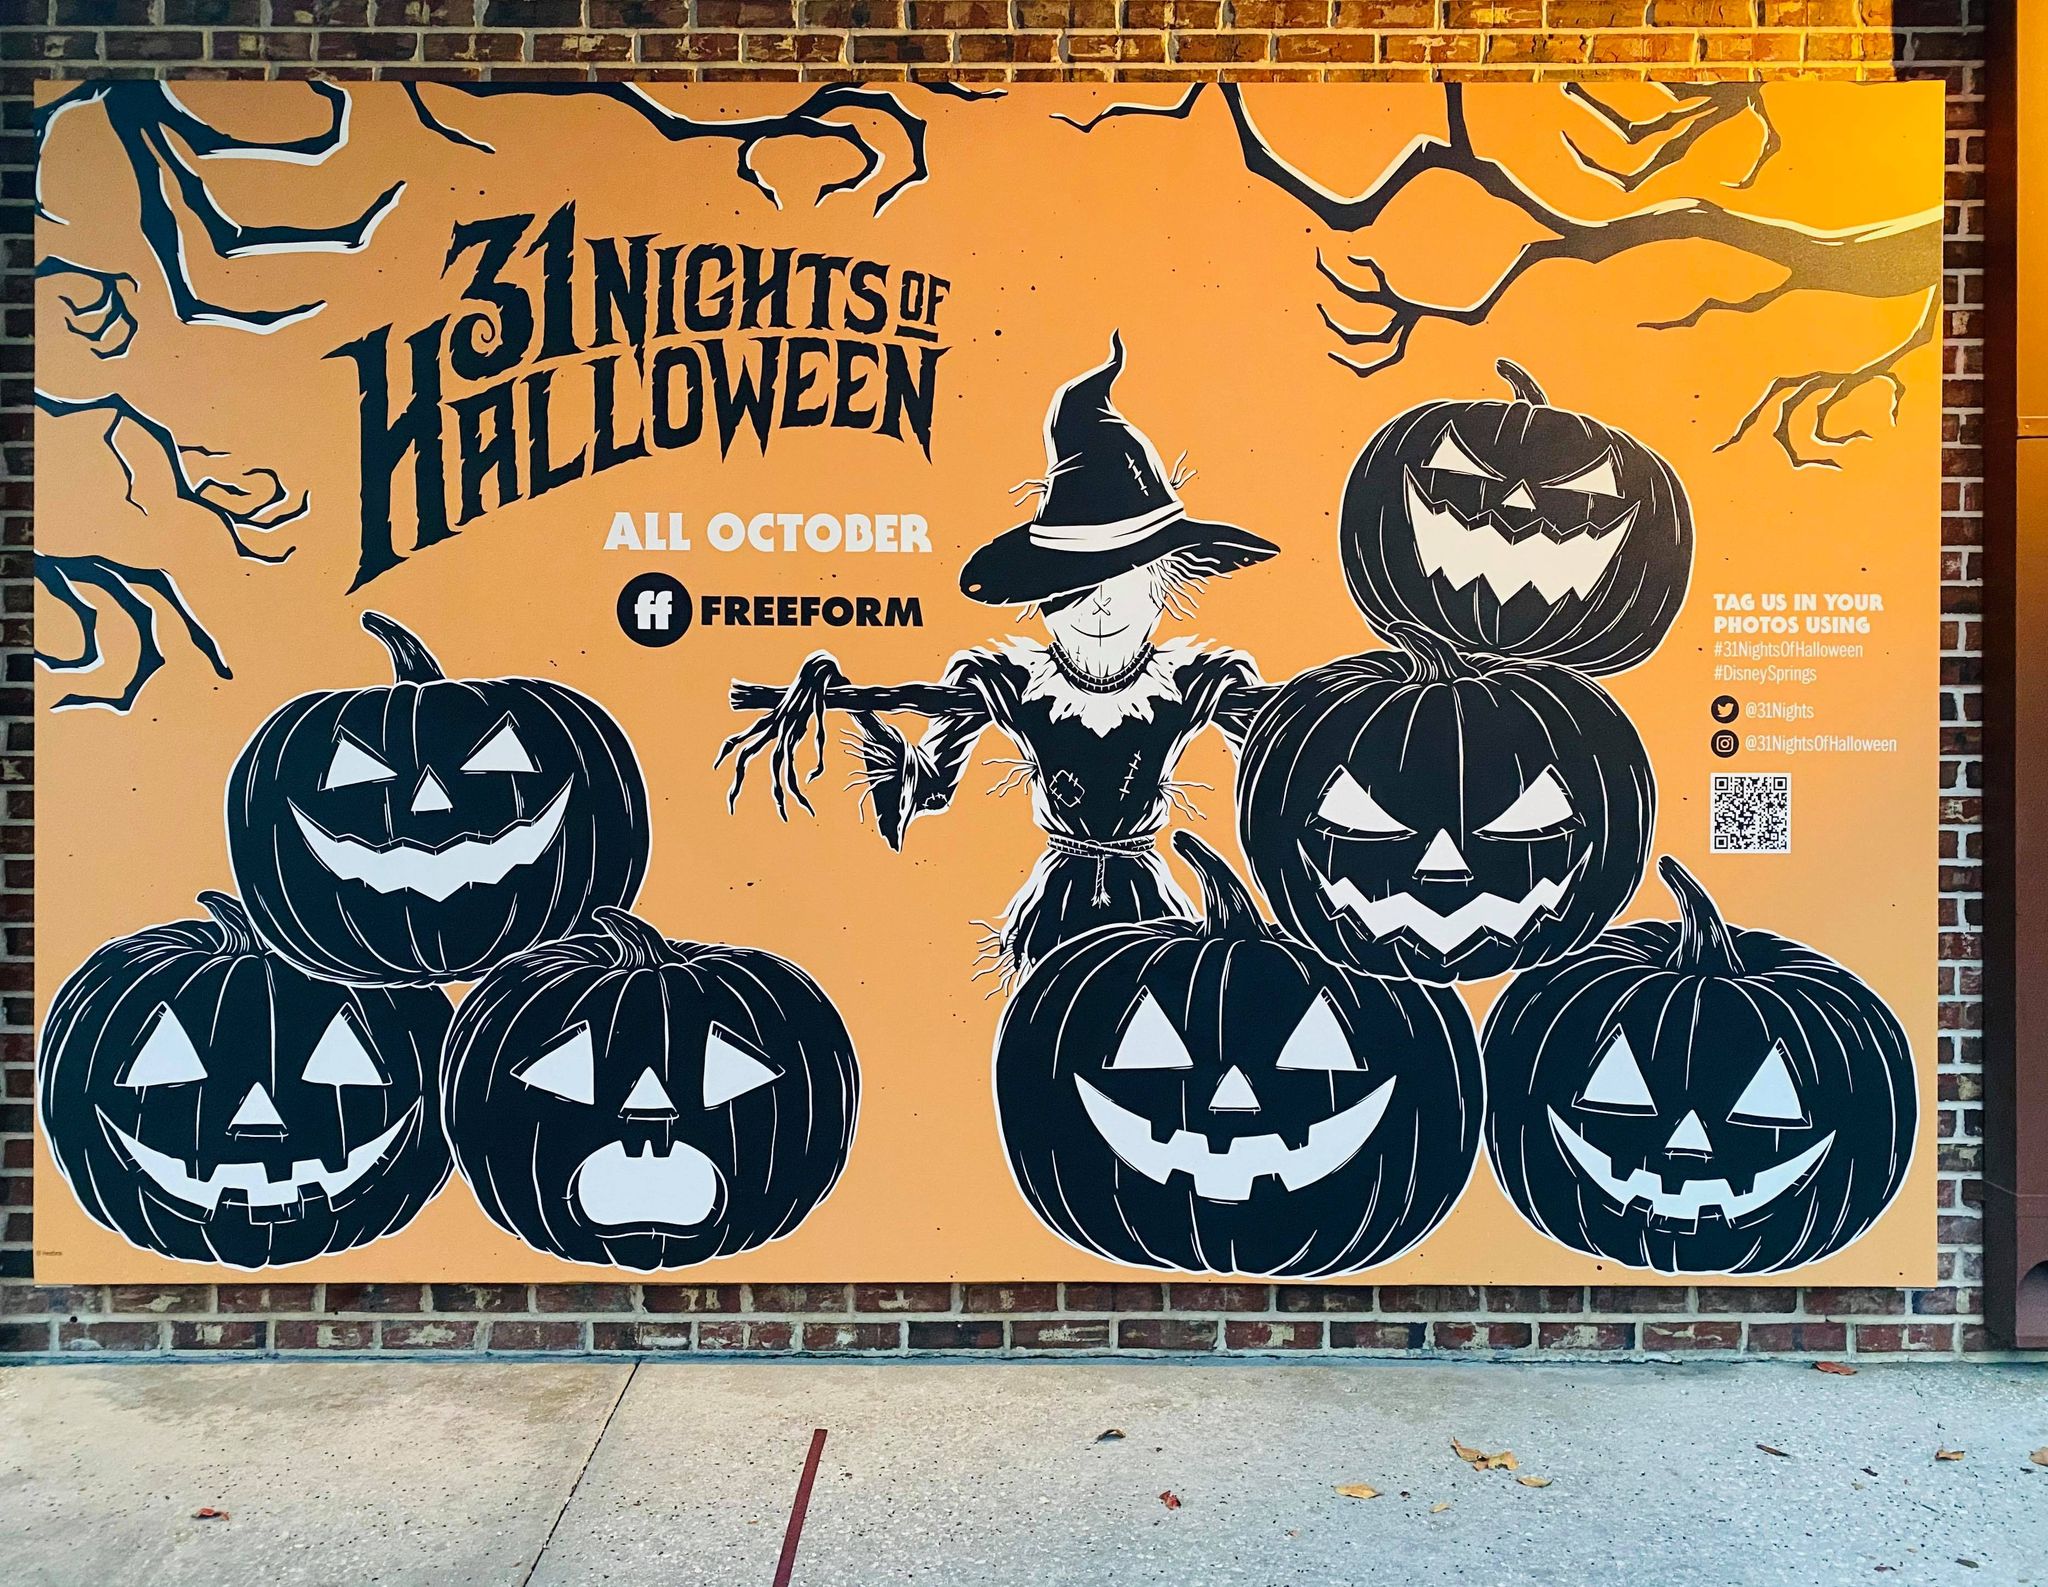 Freeform 31 Nights of Halloween Mural Crops Up at Disney Springs